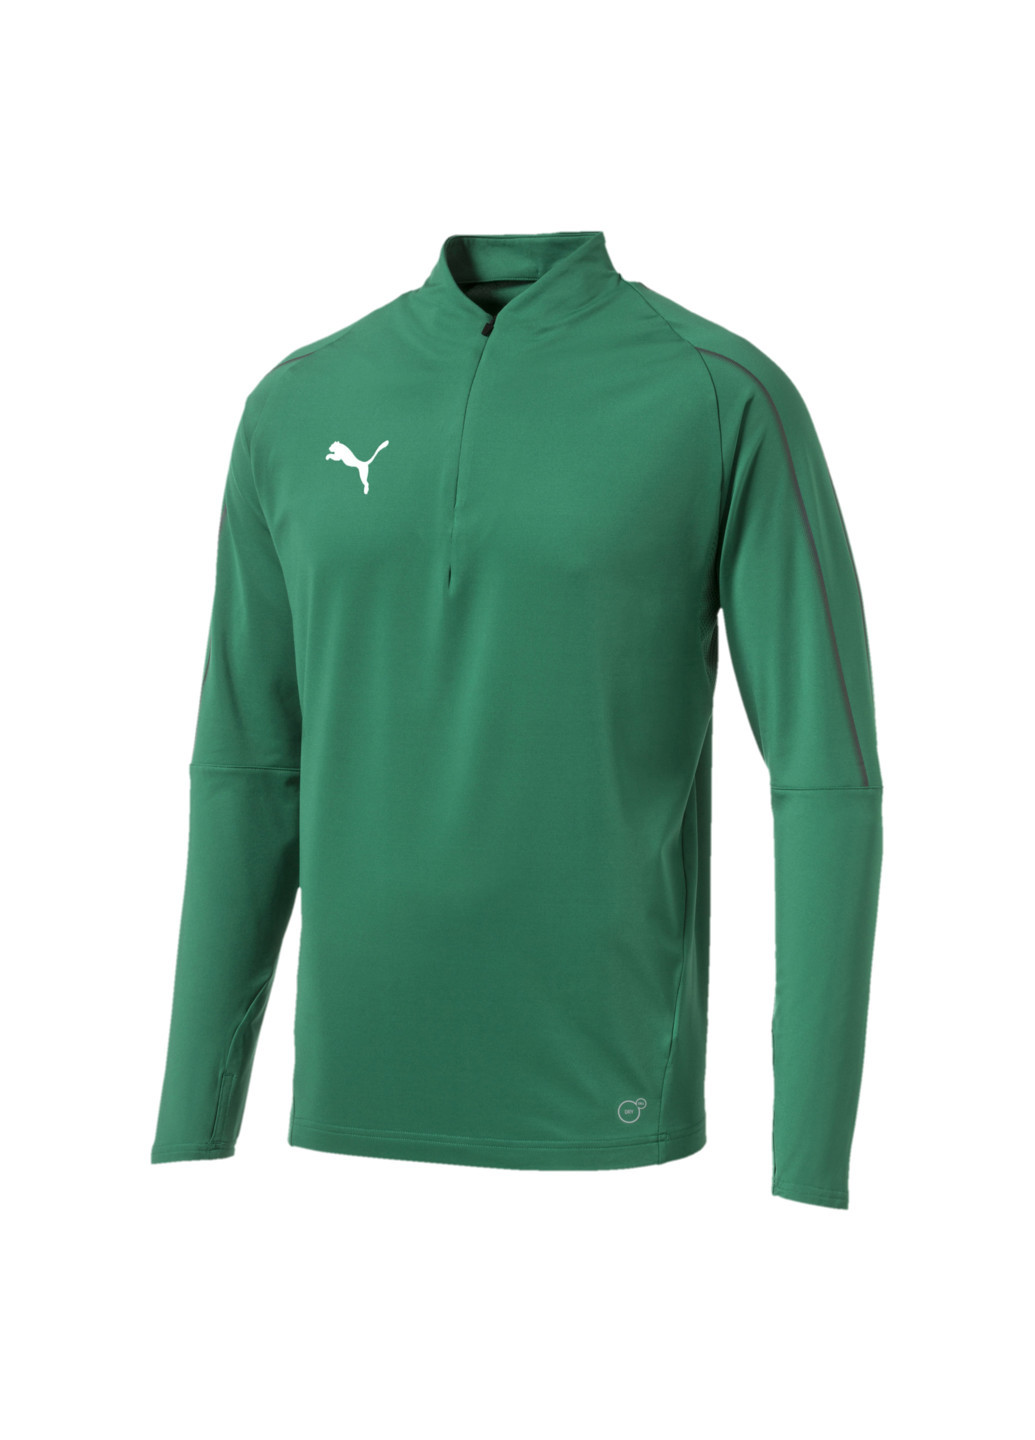 Толстовка FINAL Training Quarter Zip Men's Football Sweater Puma однотонная зелёная спортивная полиэстер, эластан